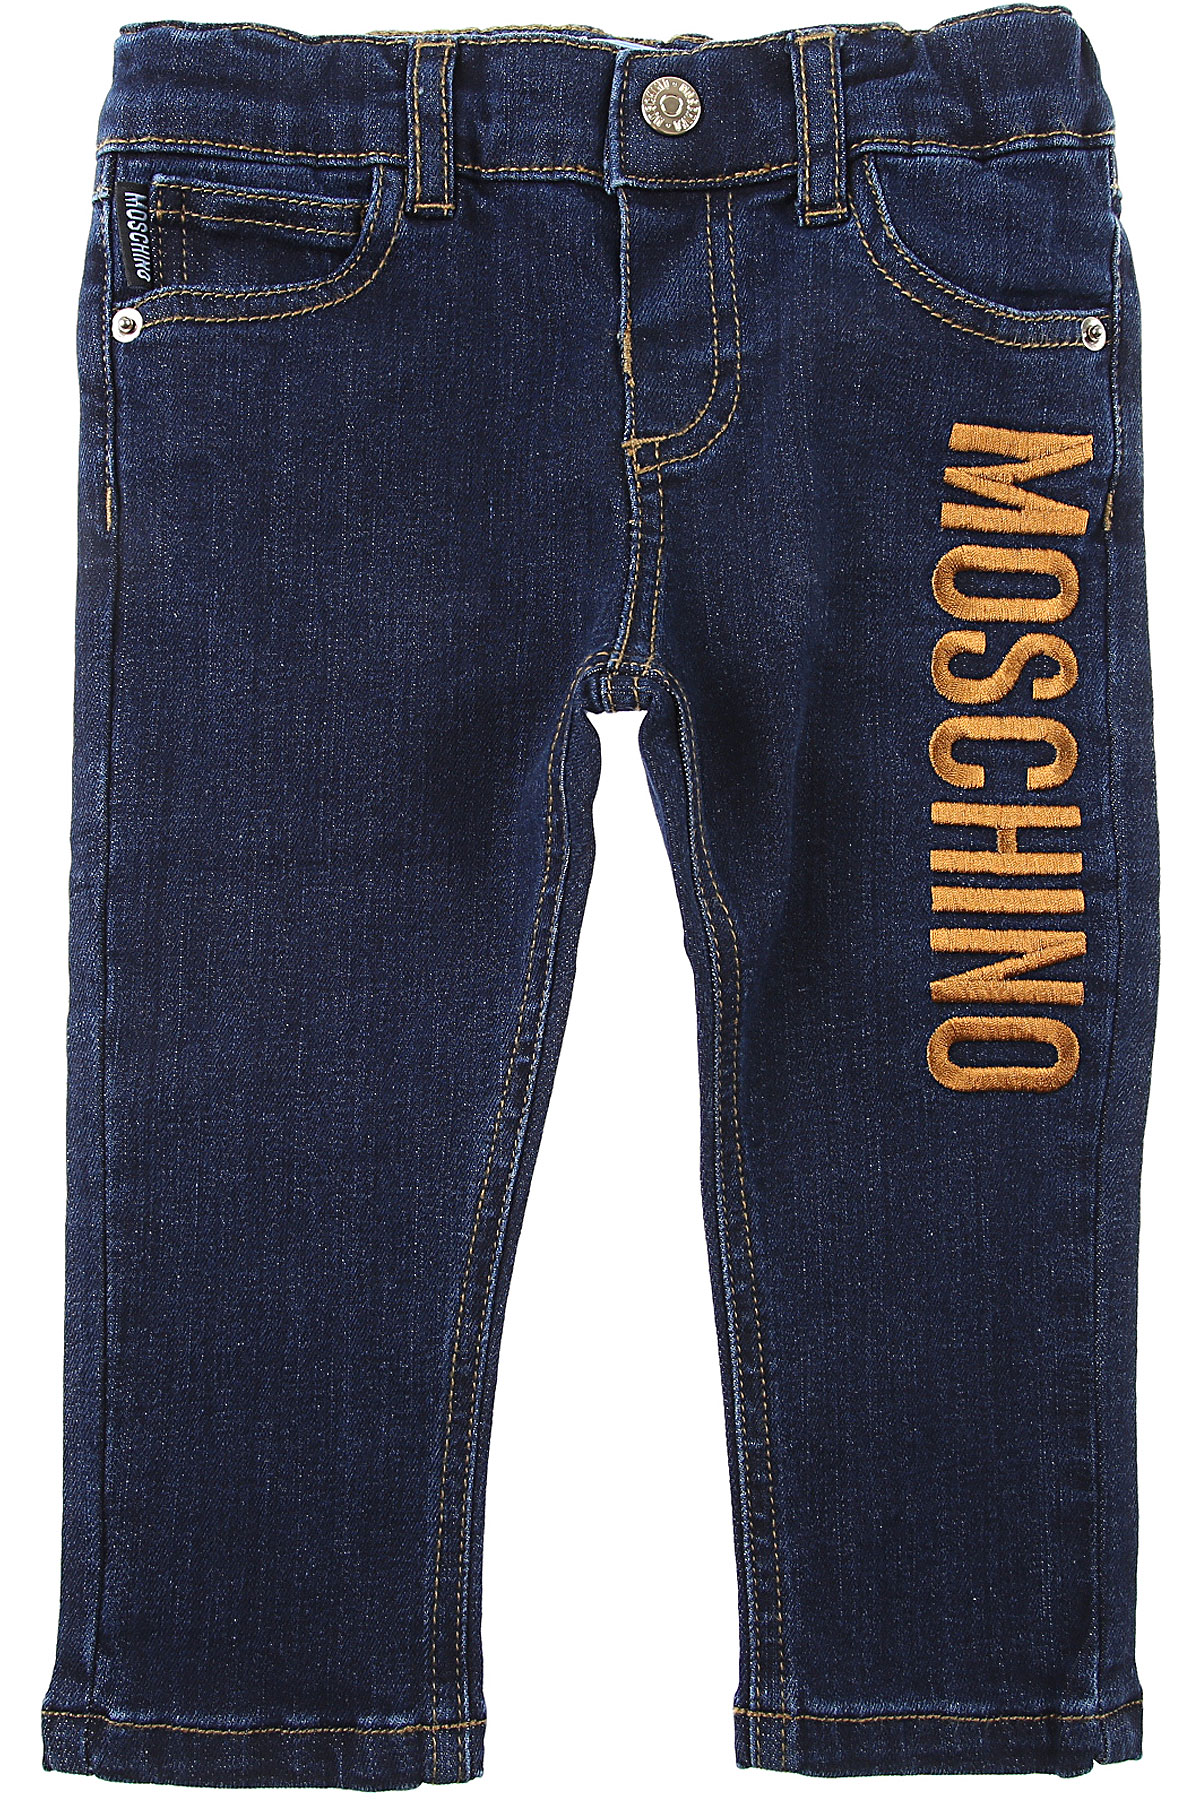 Moschino Baby Jeans für Jungen Günstig im Sale, Dunkel Denim Blau, Baumwolle, 2017, 12 M 18M 24M 2Y 3Y